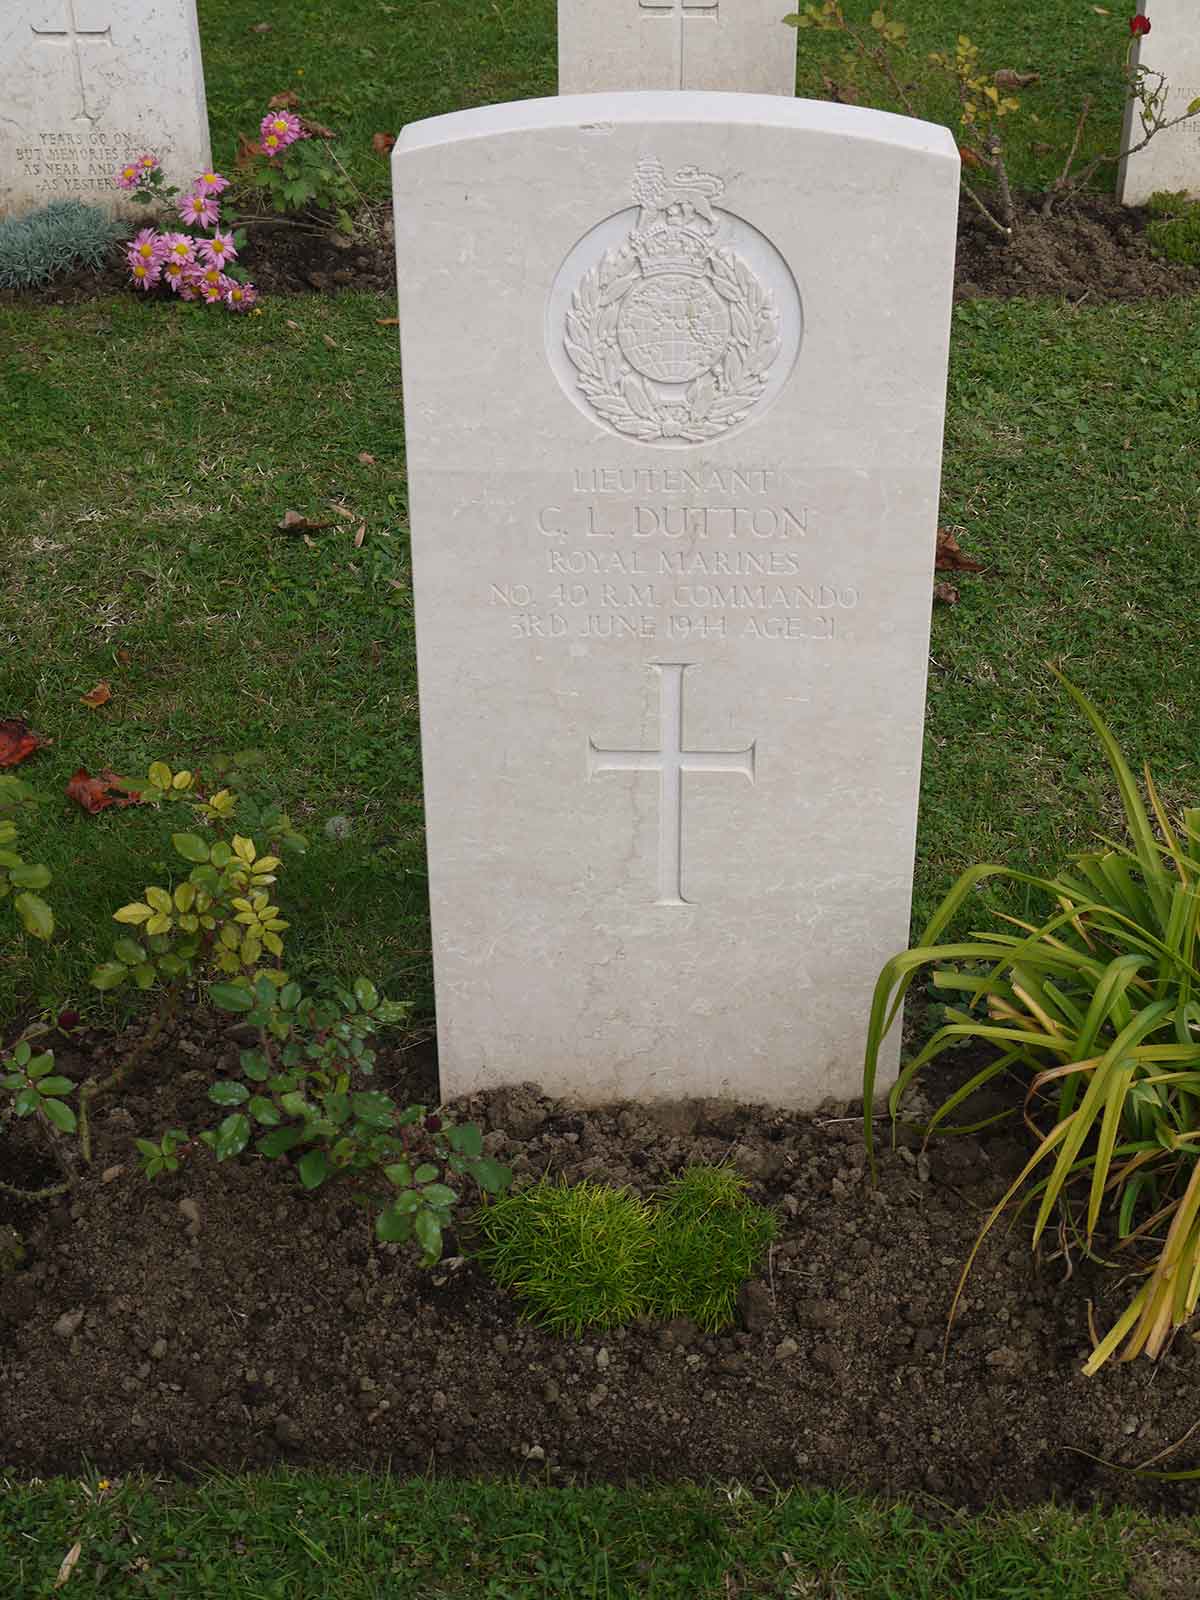 C. Dutton (Grave)